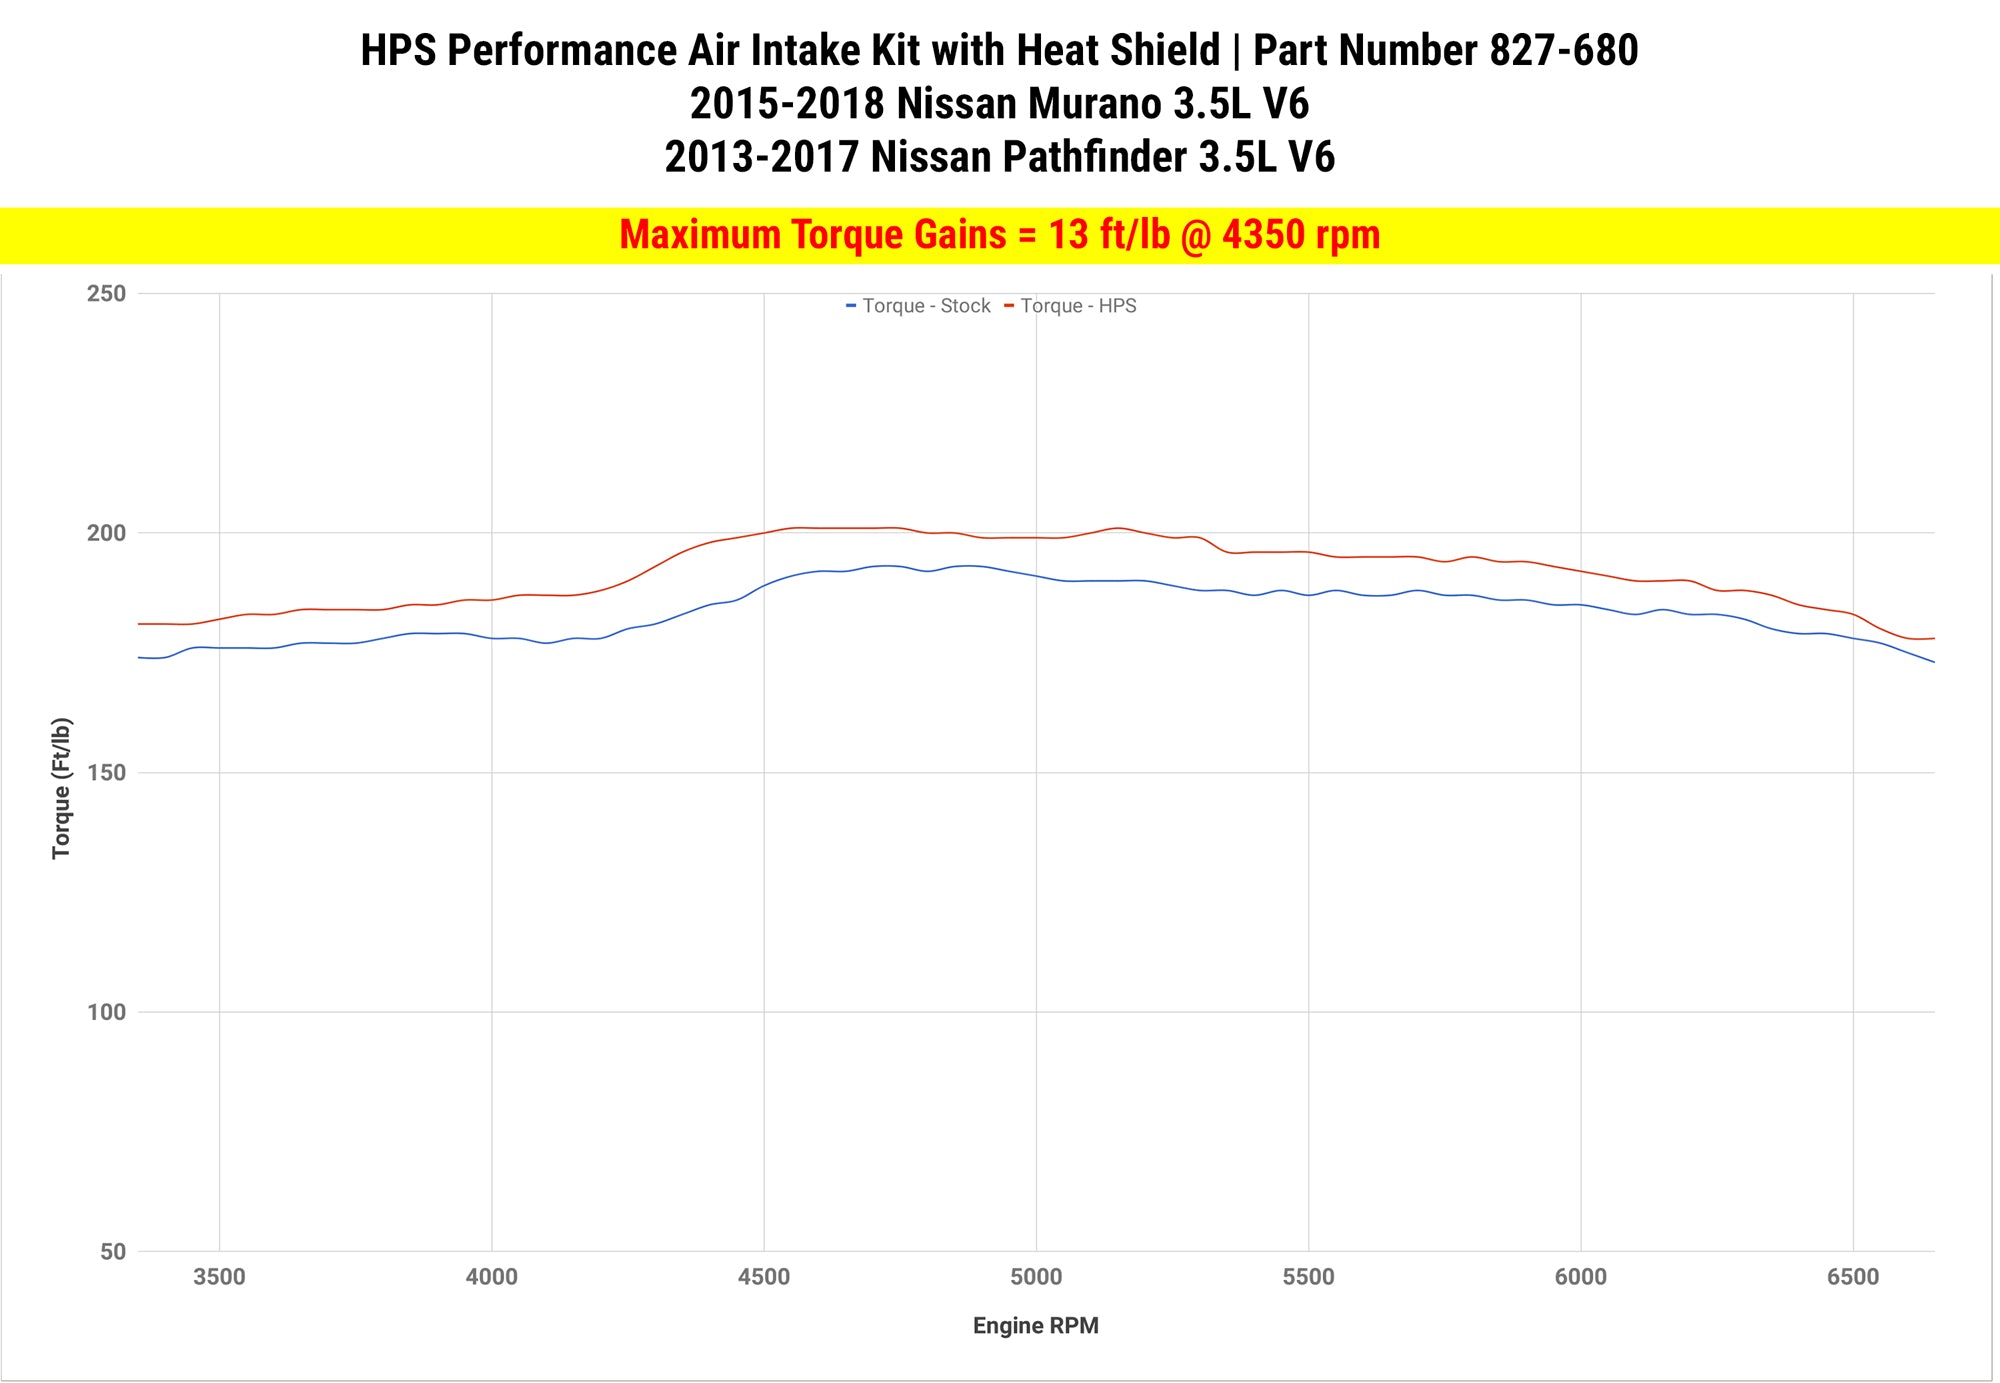 Dyno proven gains 13 ft/lb HPS Performance Shortram Air Intake Kit 2013-2017 Nissan Pathfinder 3.5L V6 827-680BL